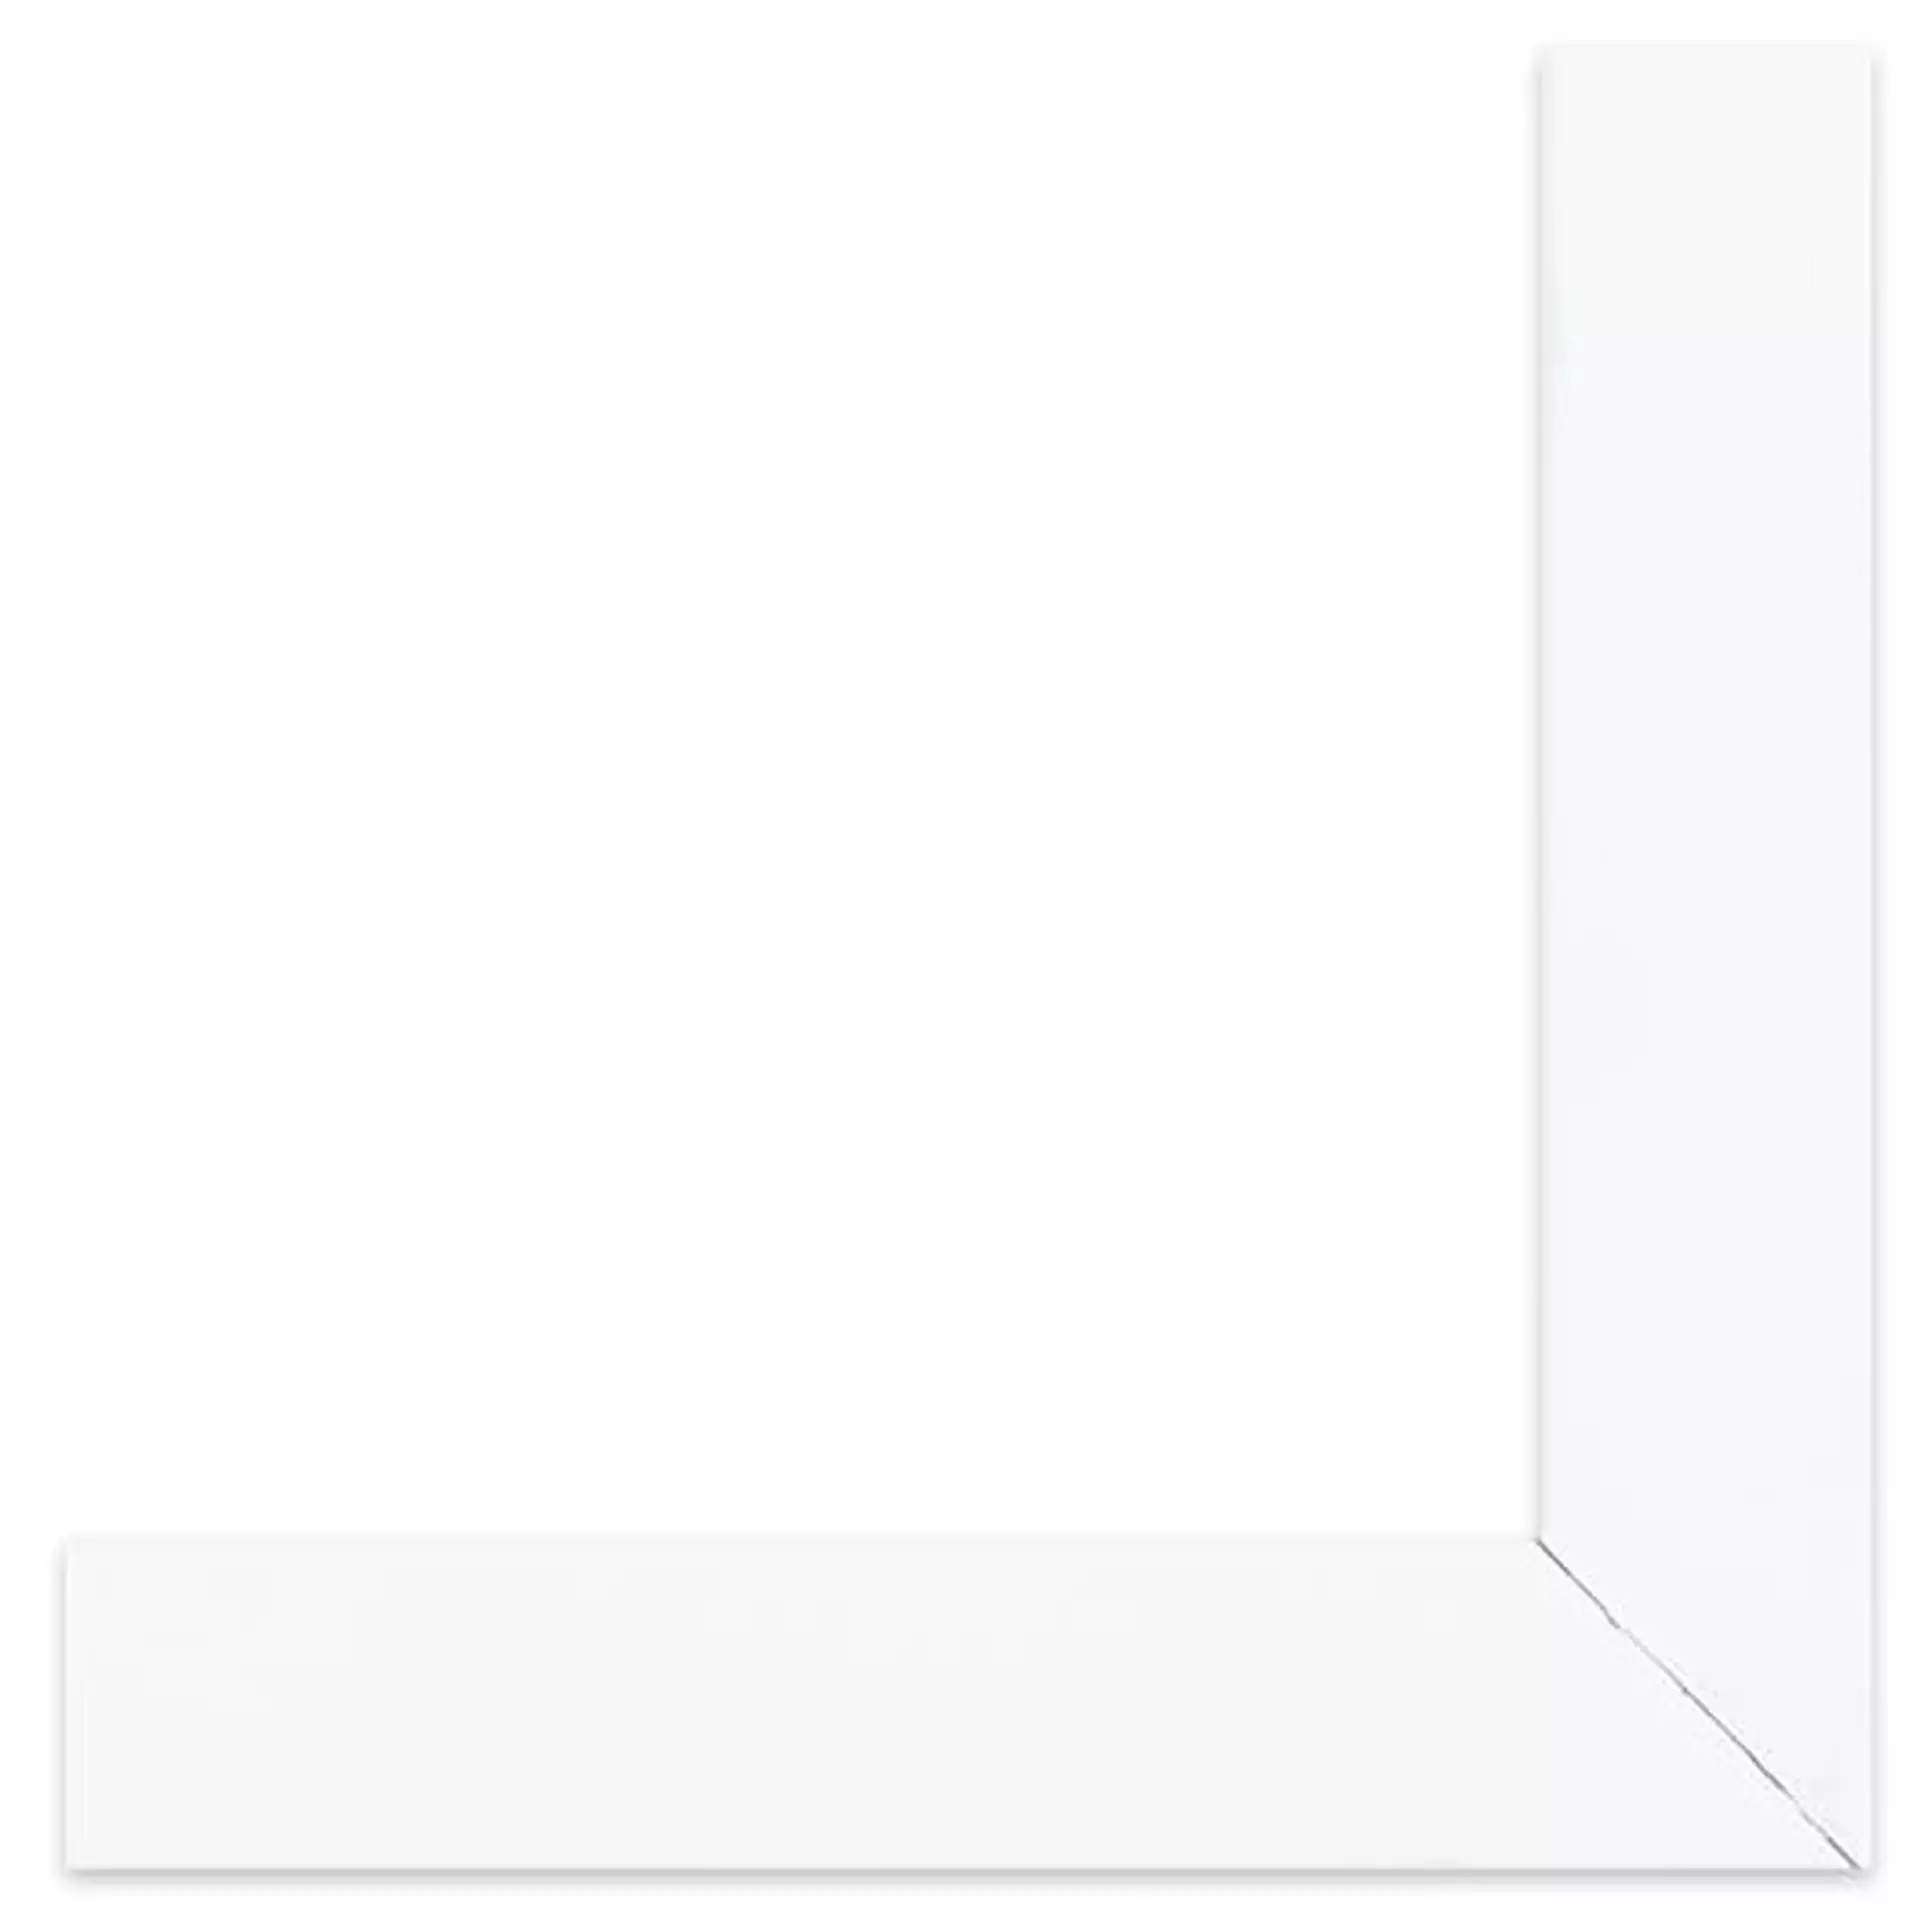 La Mirada Art Print, White Frame, 16" x 20"